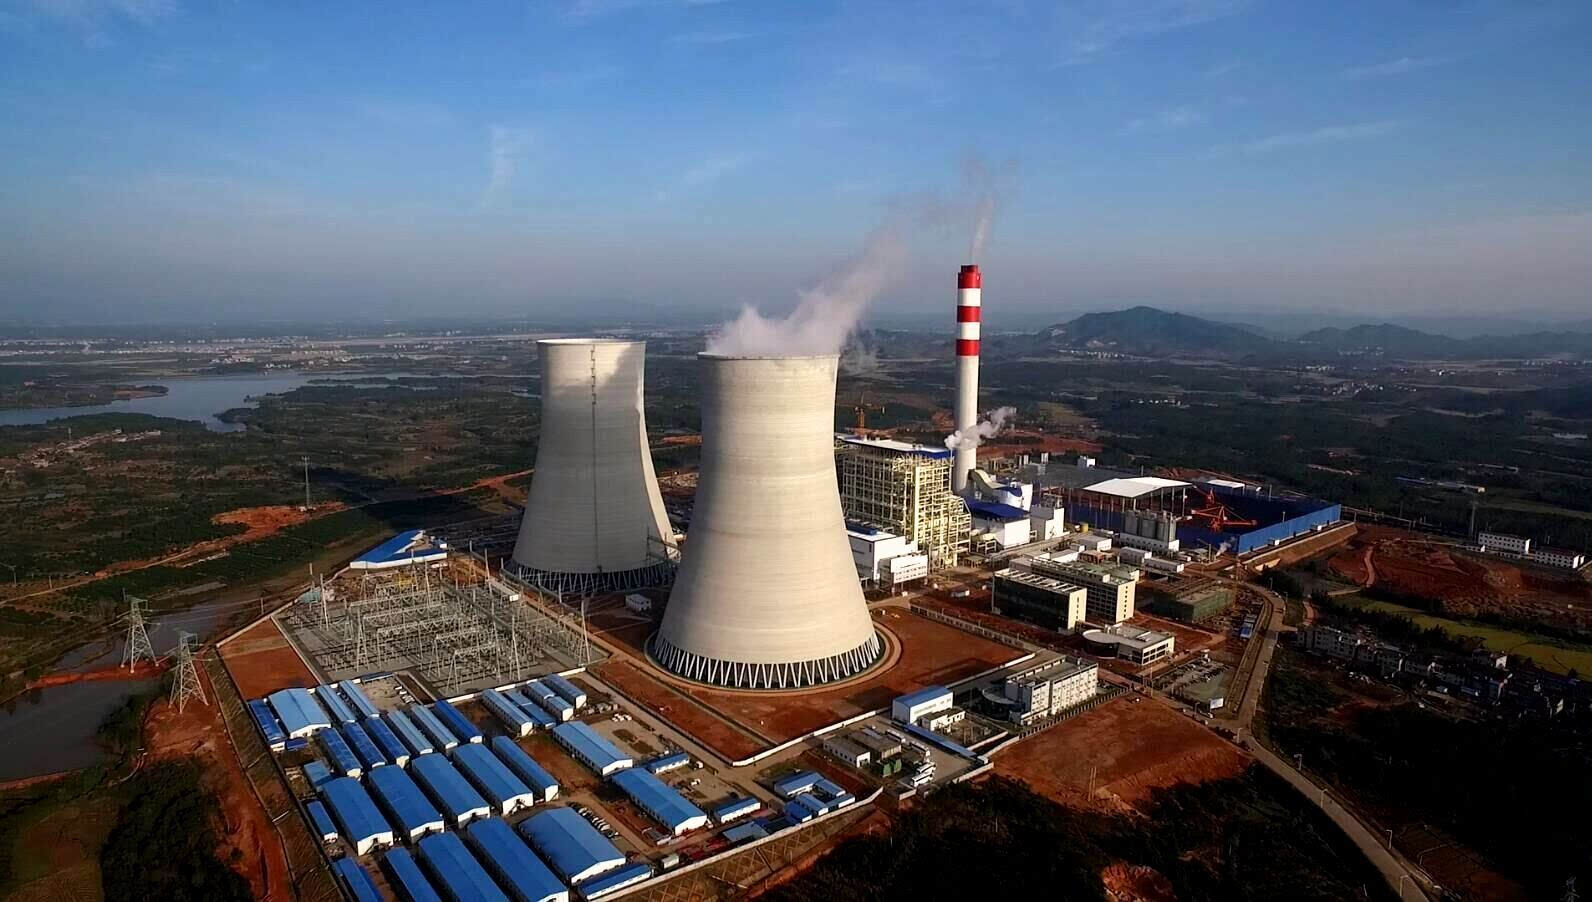 唐山北郊热电联产工程1号机组完成168小时试运行 - 中国电力网